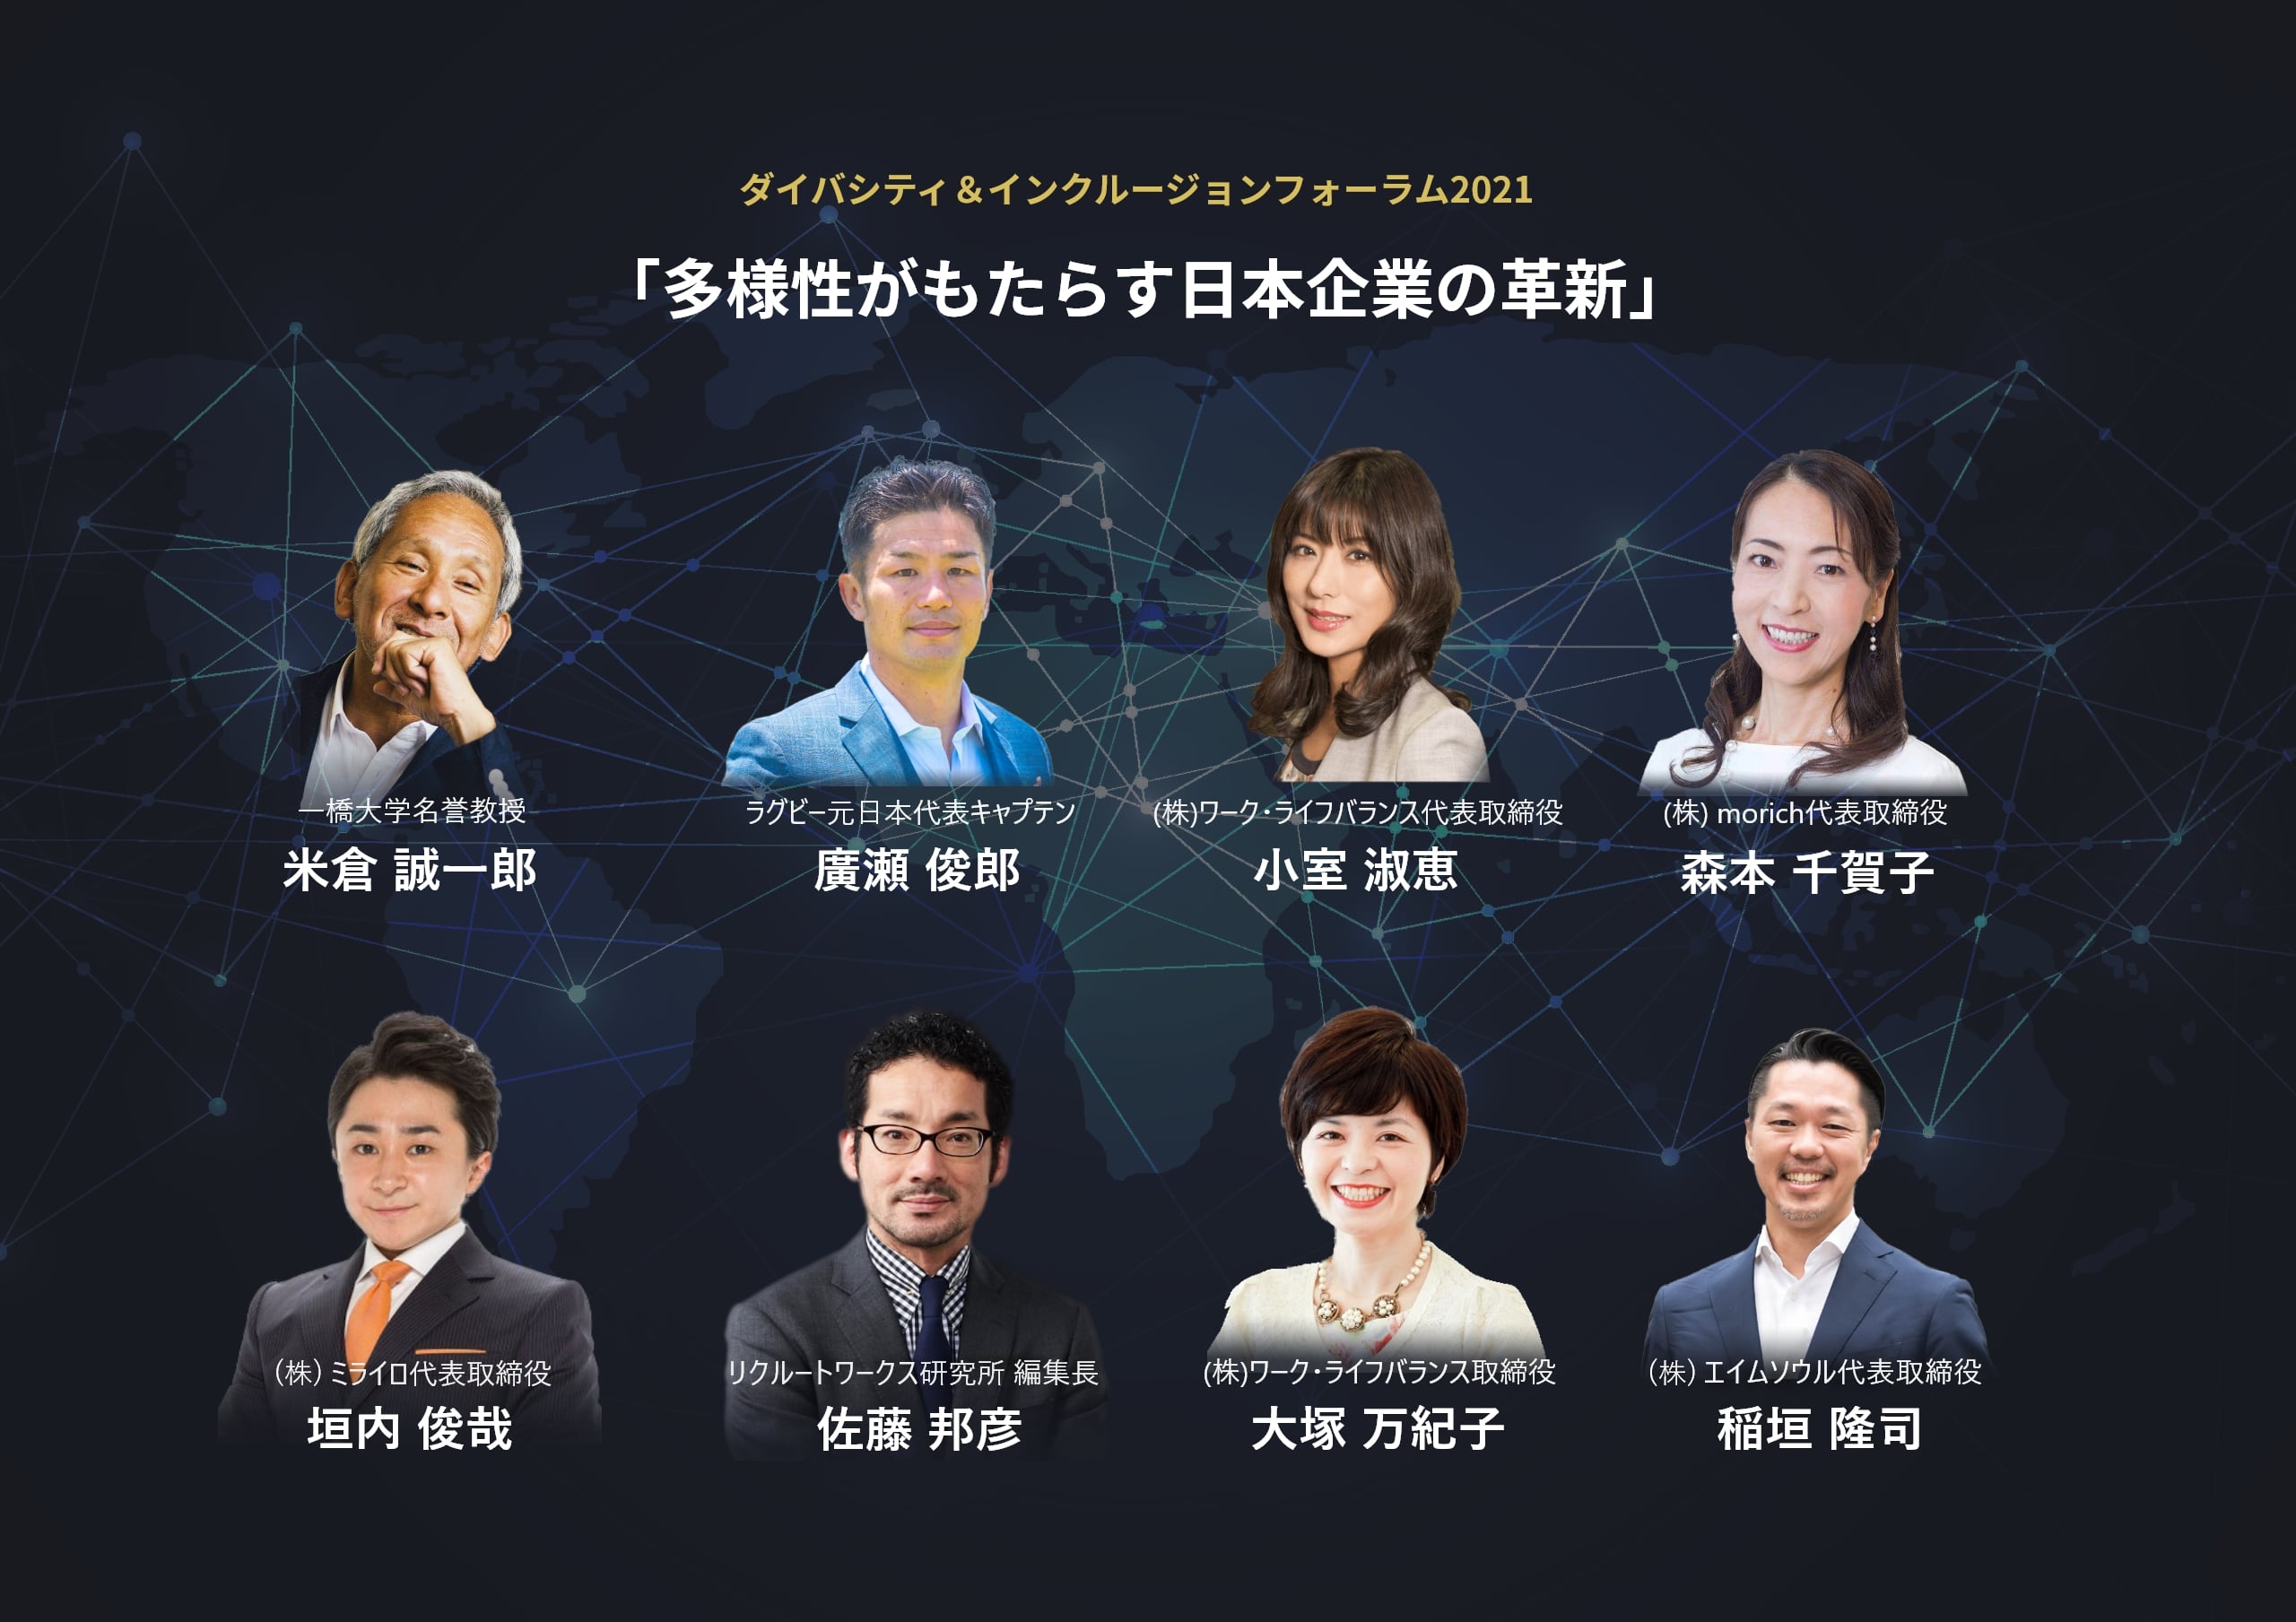 6 28 月 7 2 金 開催 ダイバシティ インクルージョンフォーラム21 多様性がもたらす日本企業の革新 申込受付開始 株式会社エイムソウルのプレスリリース